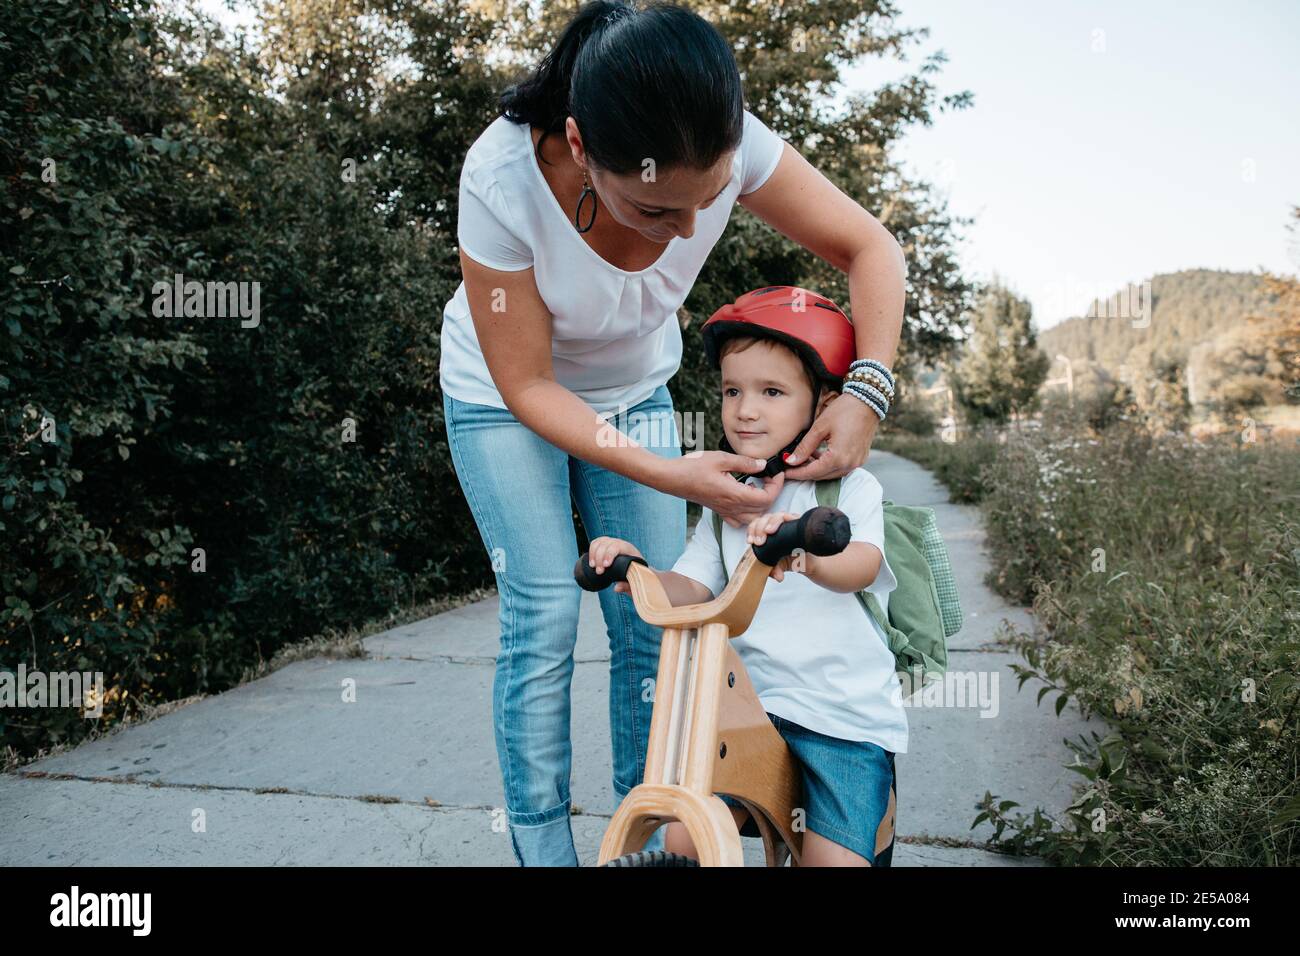 Mutter hilft ihrem kleinen Jungen, einen Fahrradhelm zu befestigen. Frau und Kind auf einem Fahrrad mit Helm. Stockfoto